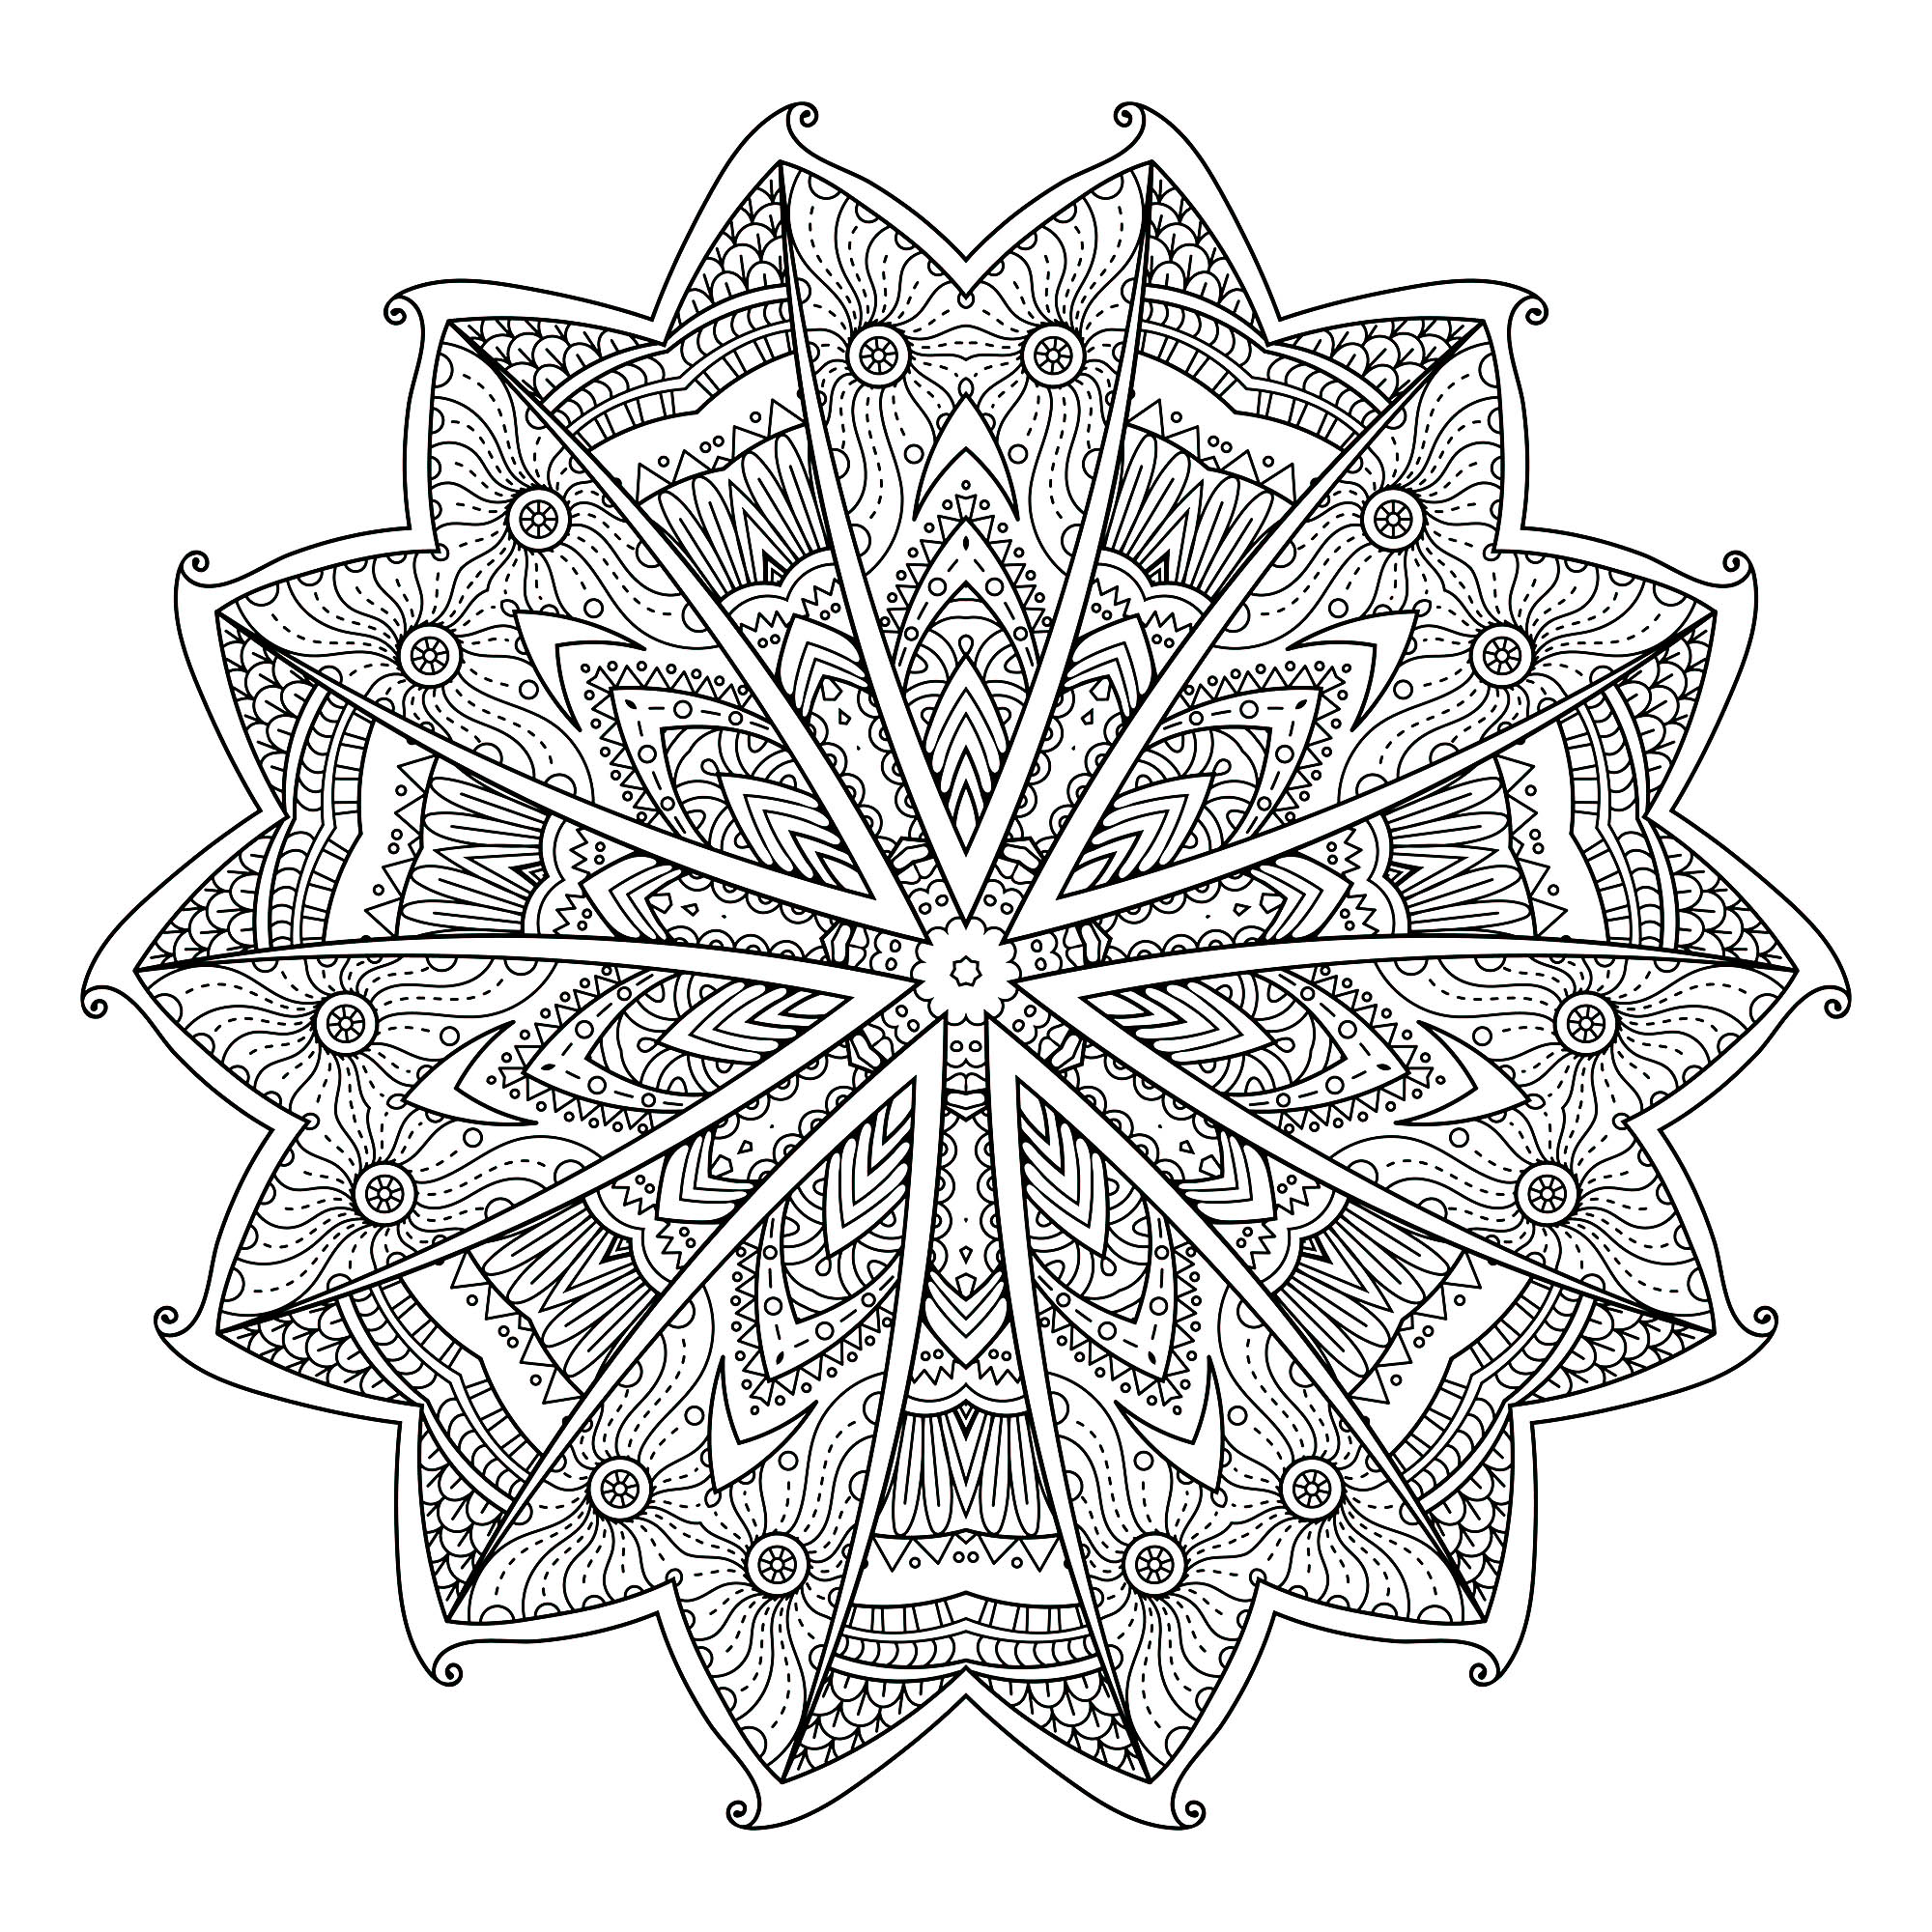 Os elementos vegetais combinam frequentemente com as Mandalas, como é o caso desta página para colorir muito original composta por 14 mostradores (2 grupos de 7), semelhantes a asas de borboleta.